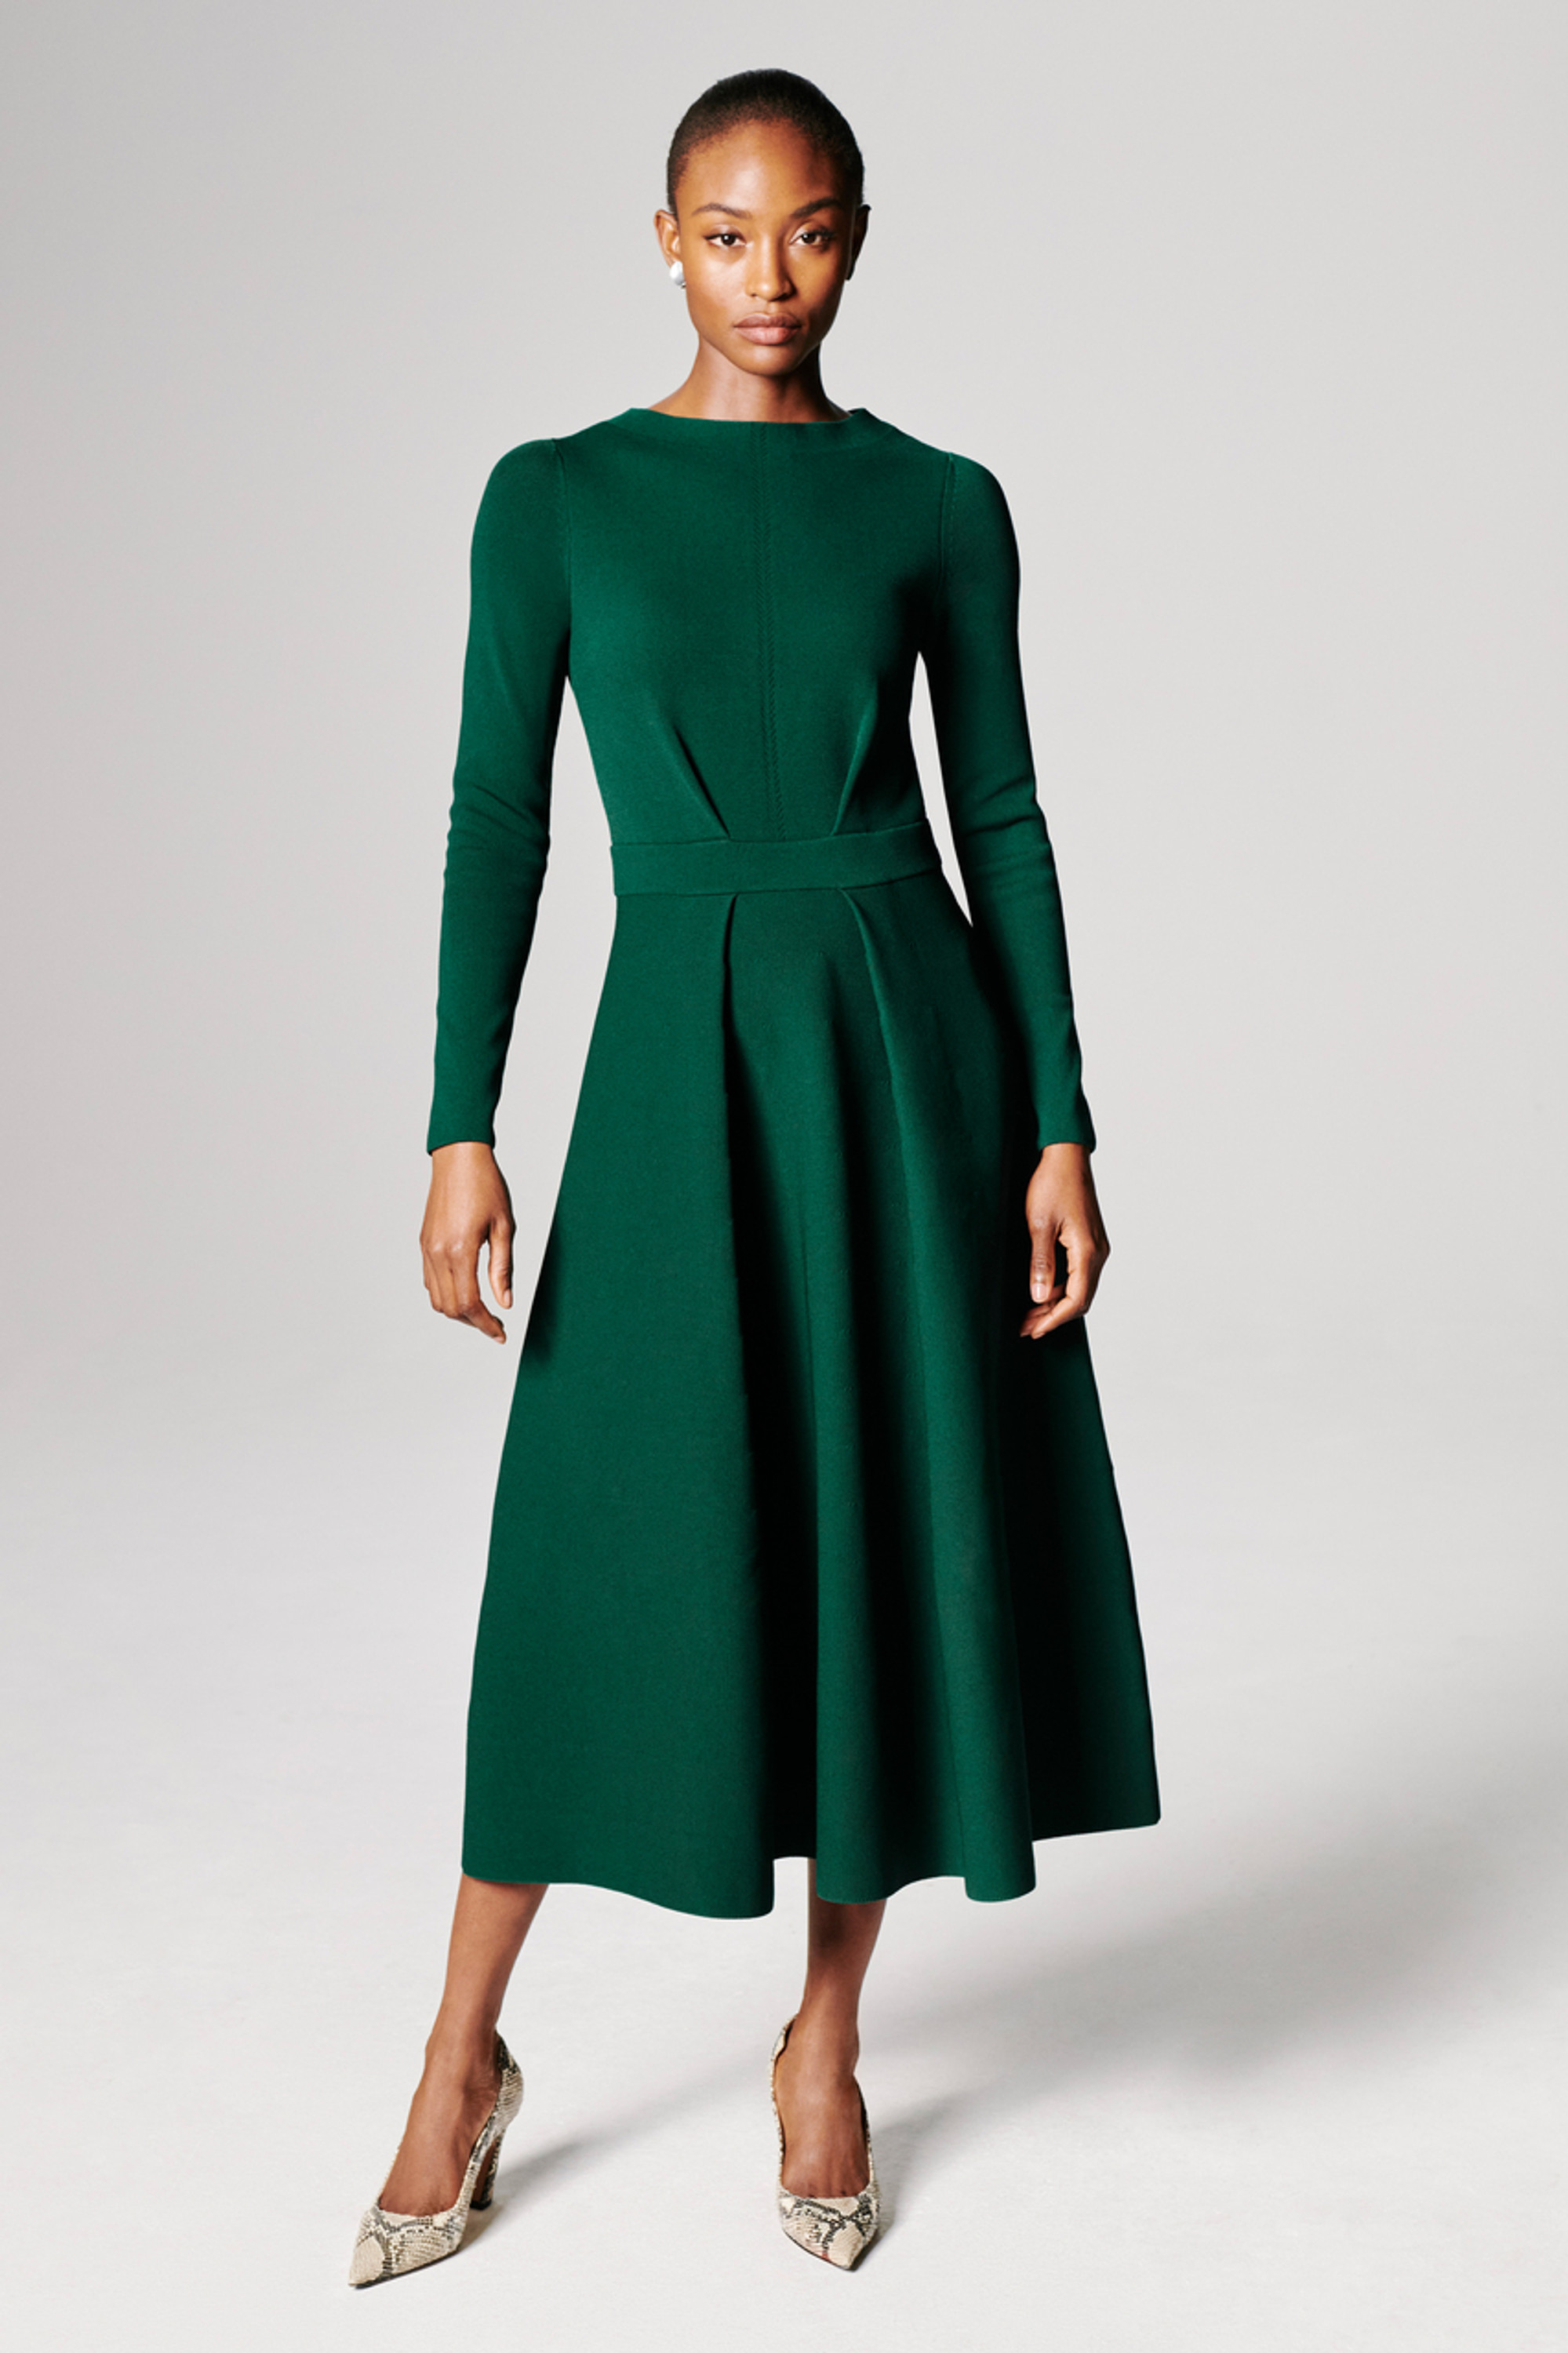 Bellaria Dress Jewel Green Sculpt Knit - Welcome to the Fold LTD